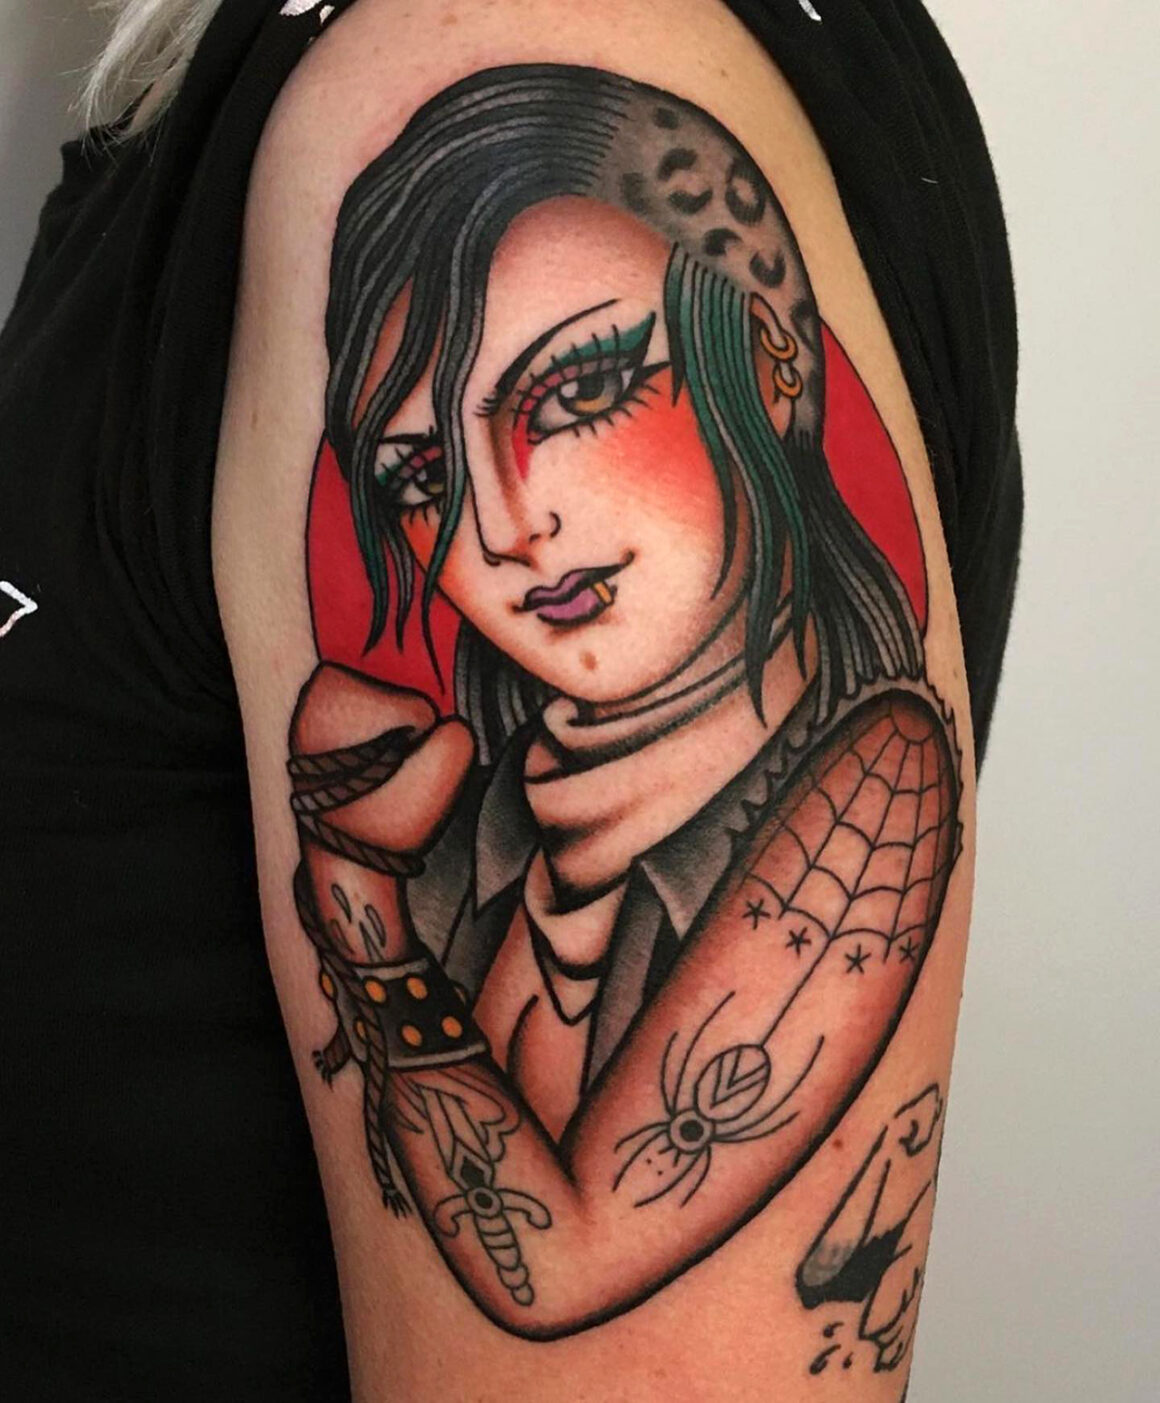 Tattoo by Moira Ramone, tattoo artist, @moira.ramone